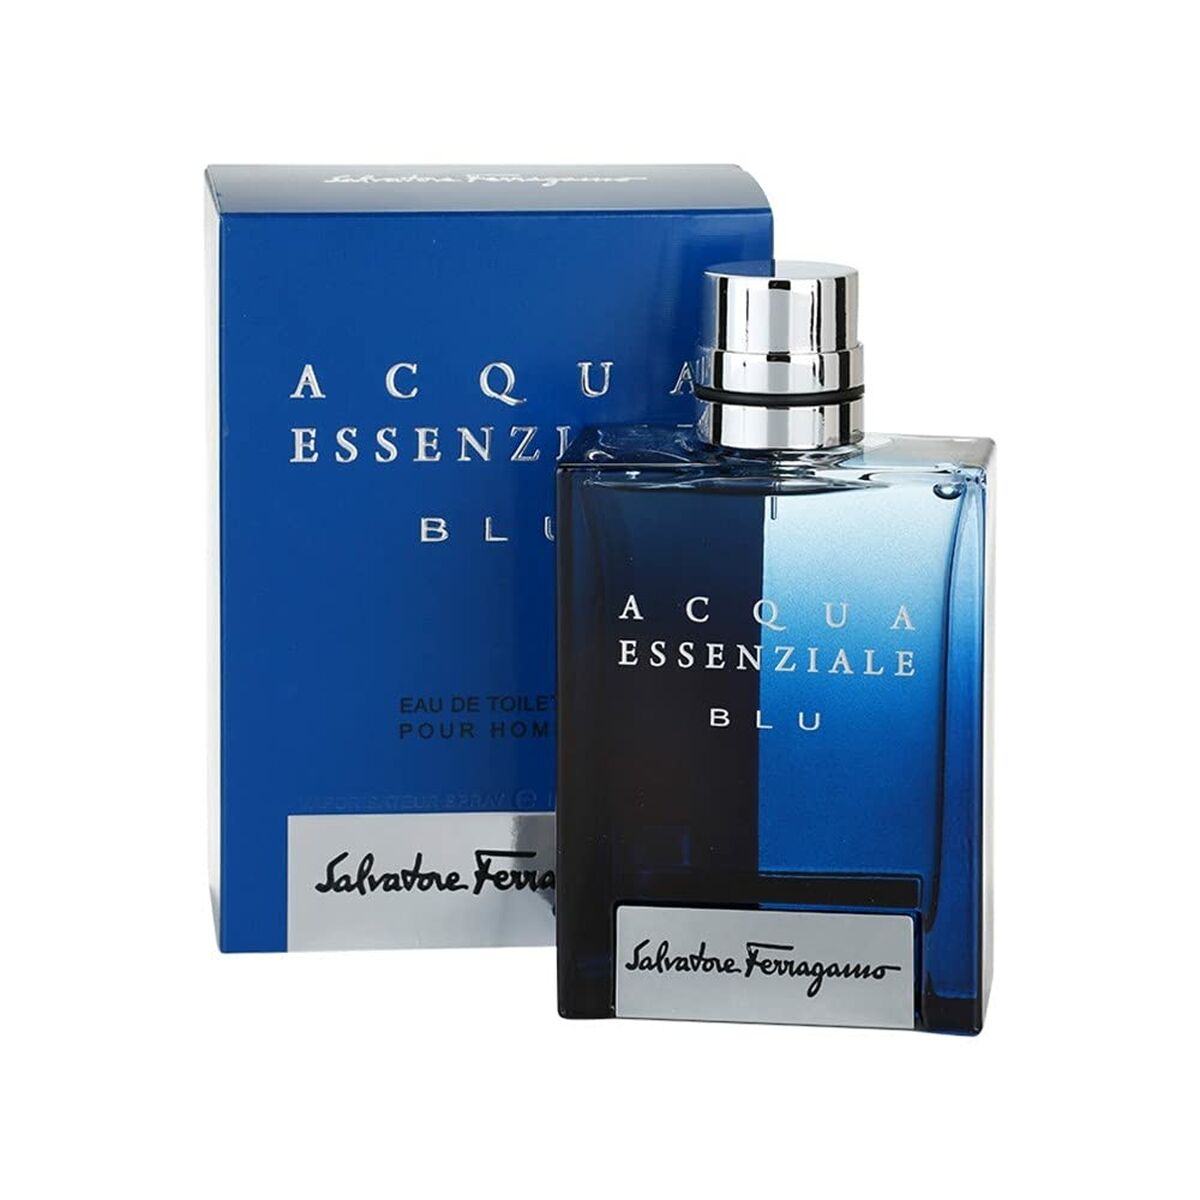 Parfum Homme Salvatore Ferragamo Acqua Essenziale Blu EDT 100 ml Acqua Essenziale Blu